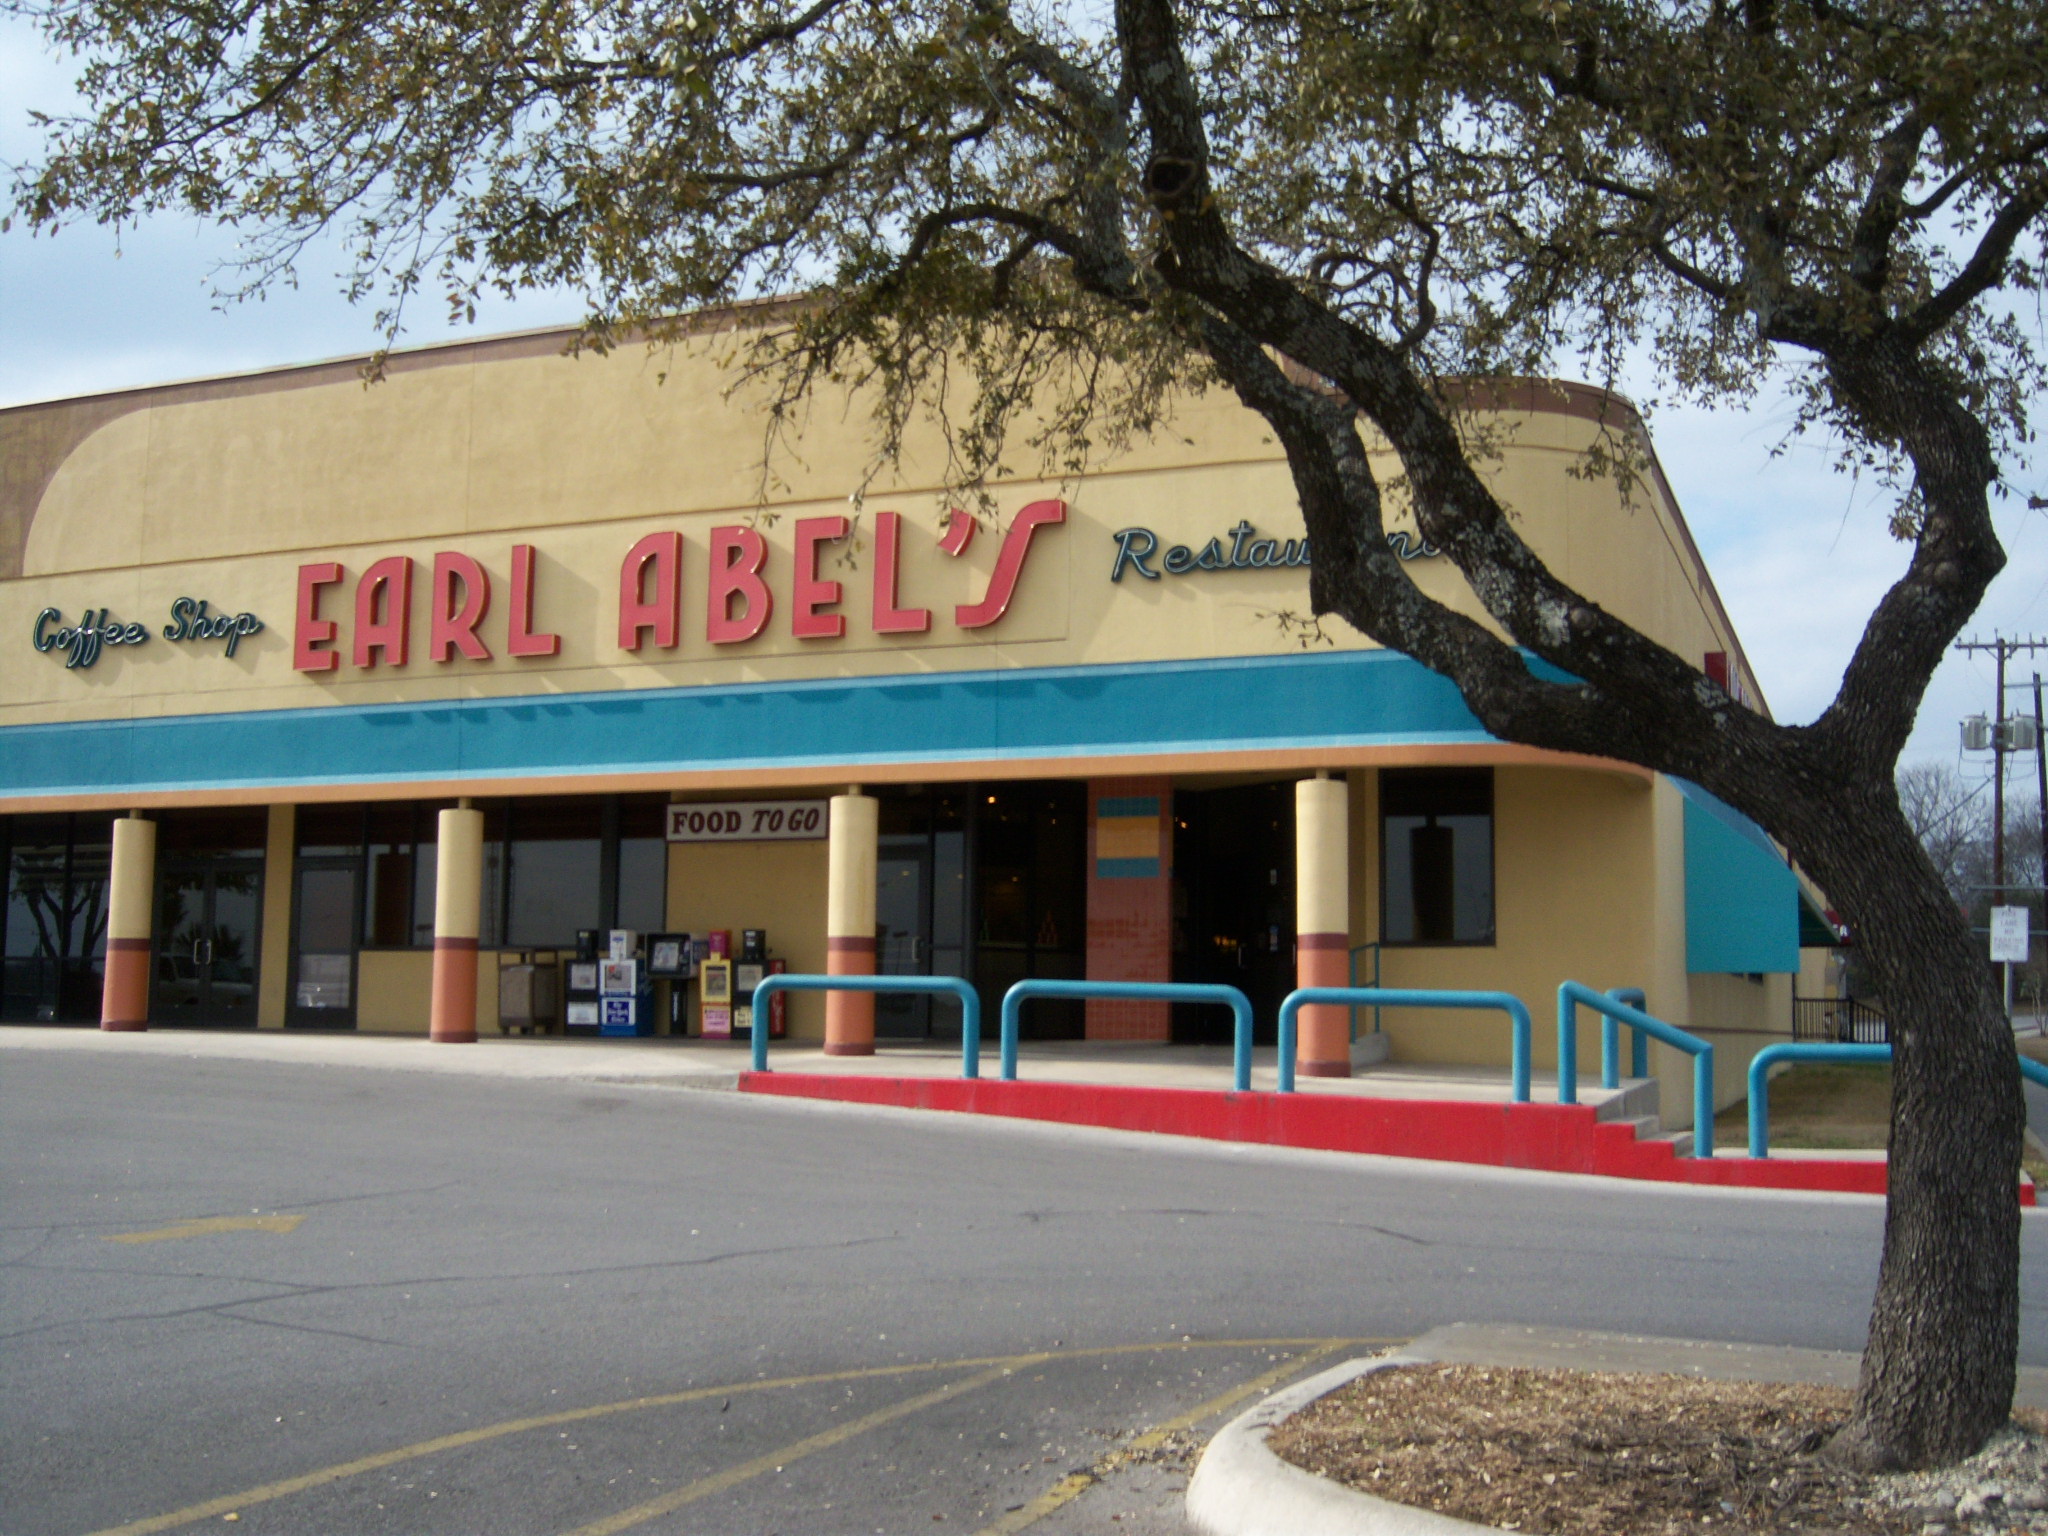 Earl Abel's